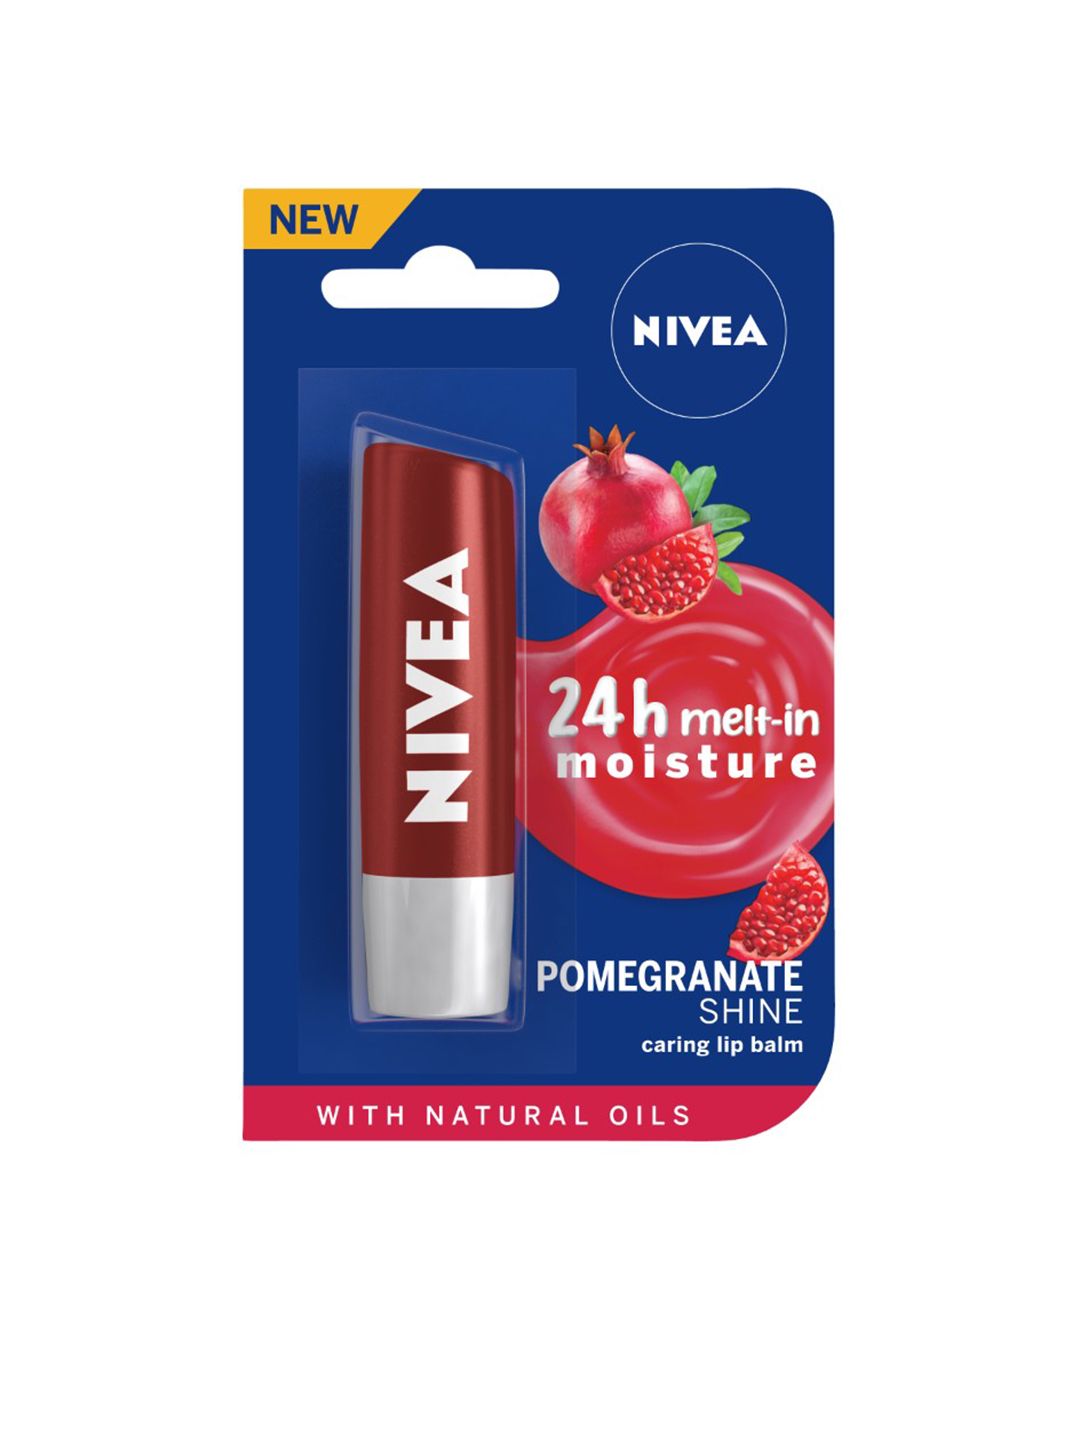 Nivea Pomegranate Shine Caring Lip Balm Price in India